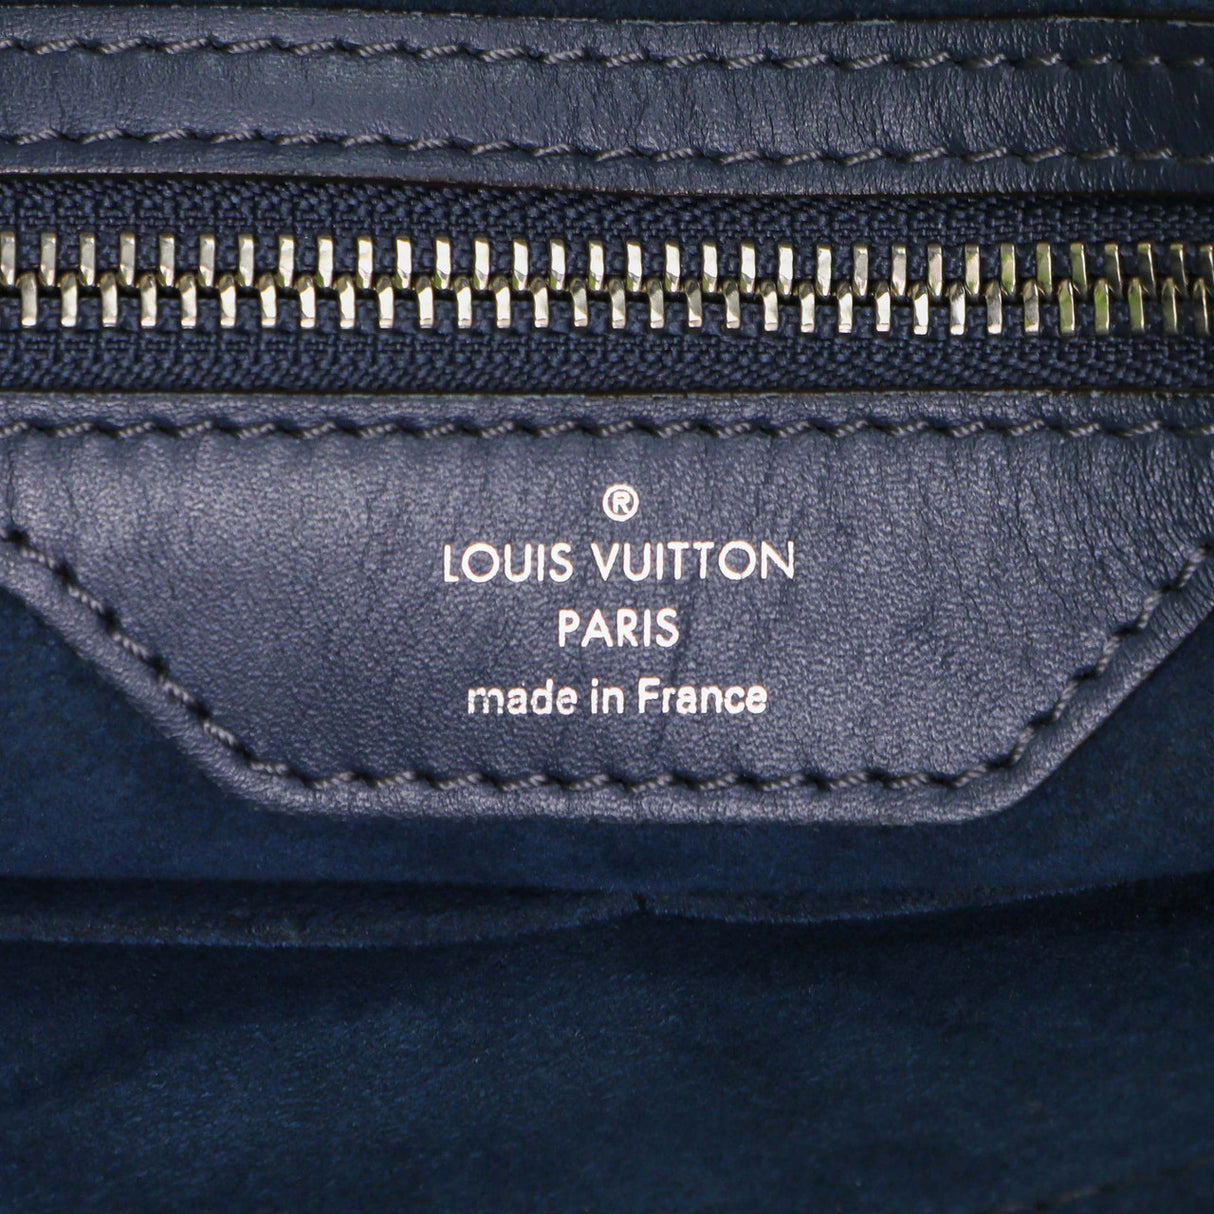 Louis Vuitton Blue Epi Sac Plat GM